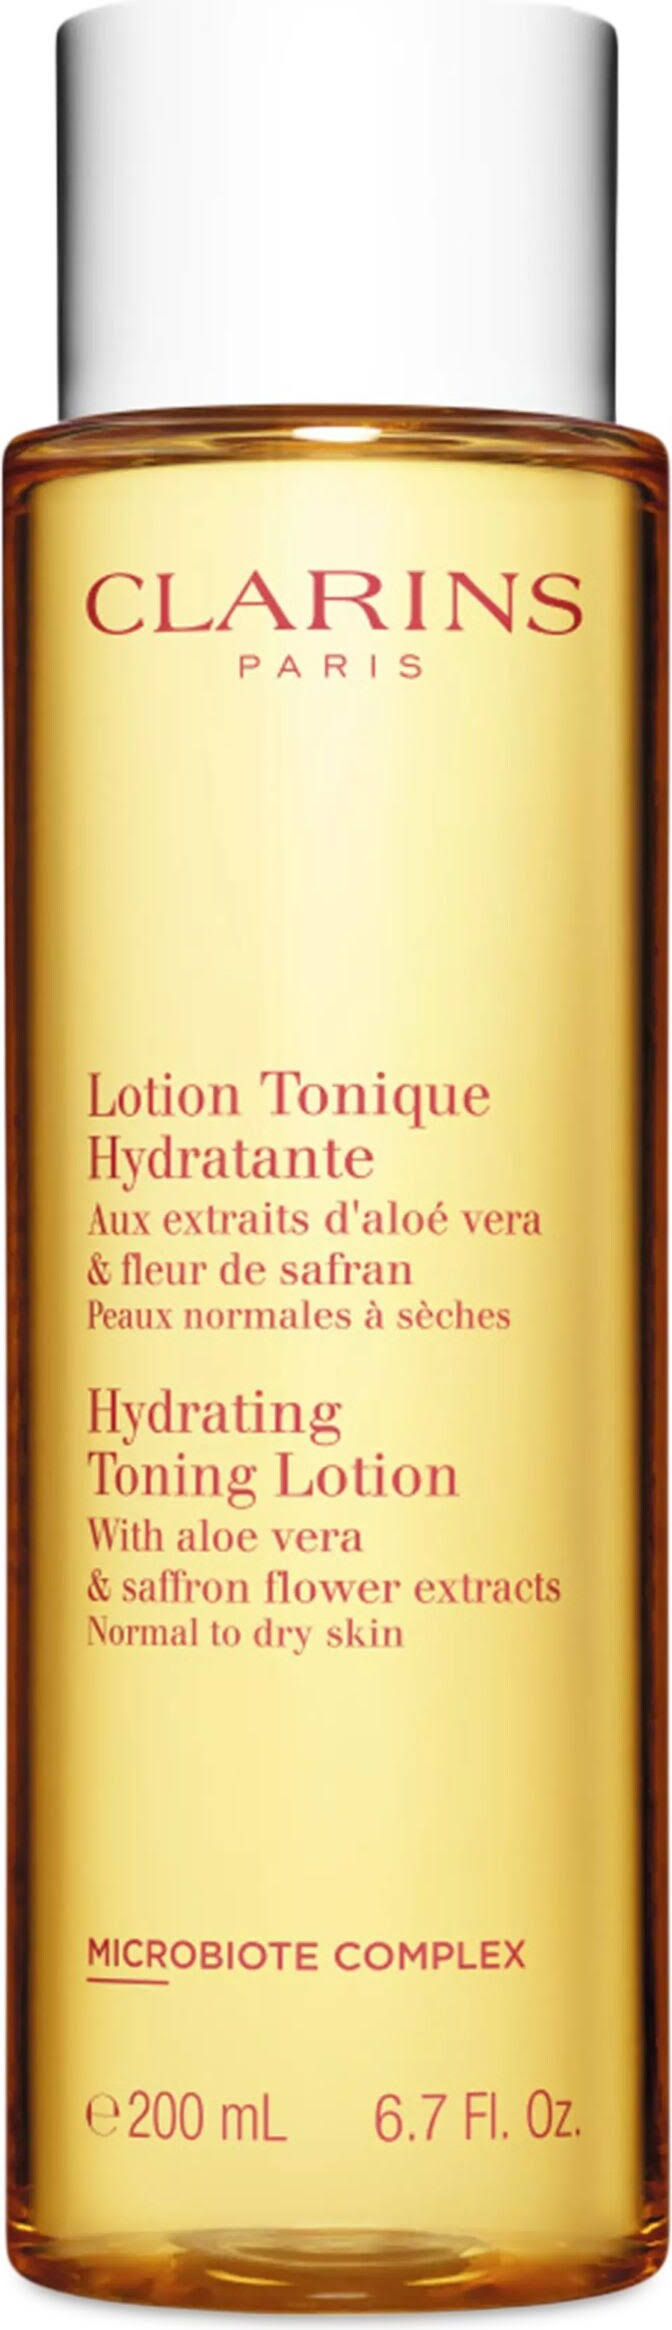 Clarins Hydrating Toning Lotion 13.5 oz.